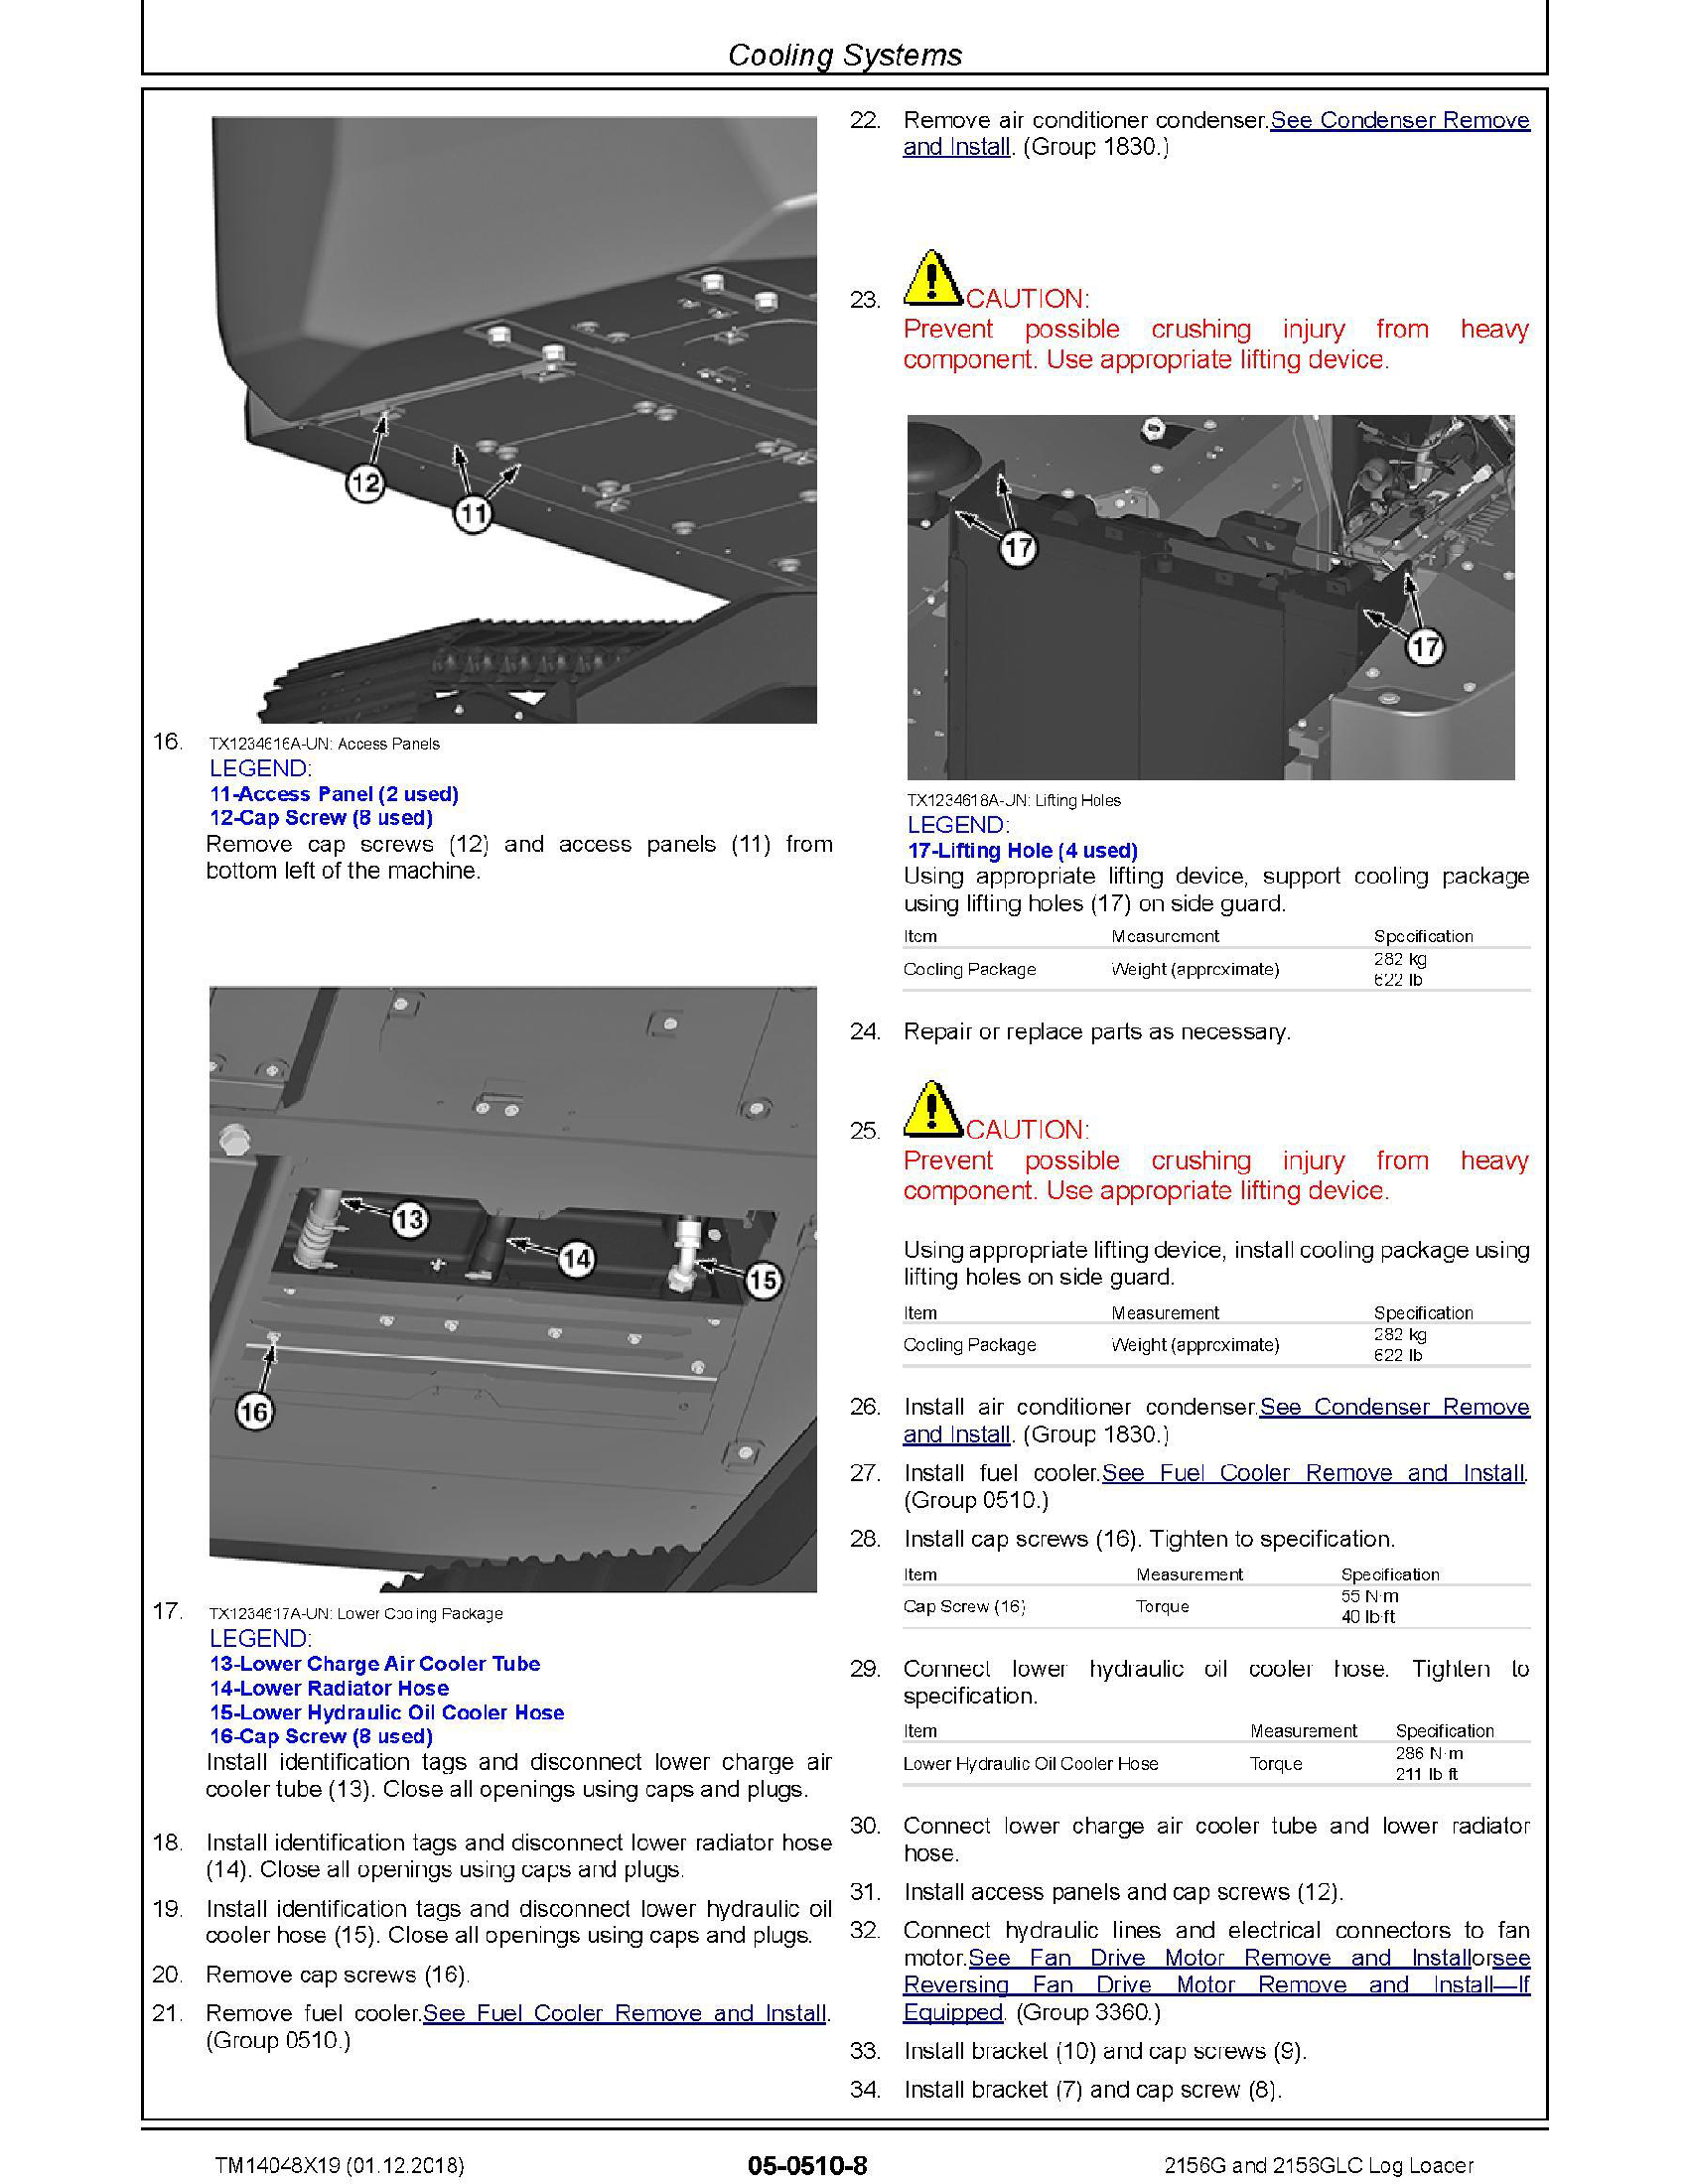 John Deere 843G manual pdf